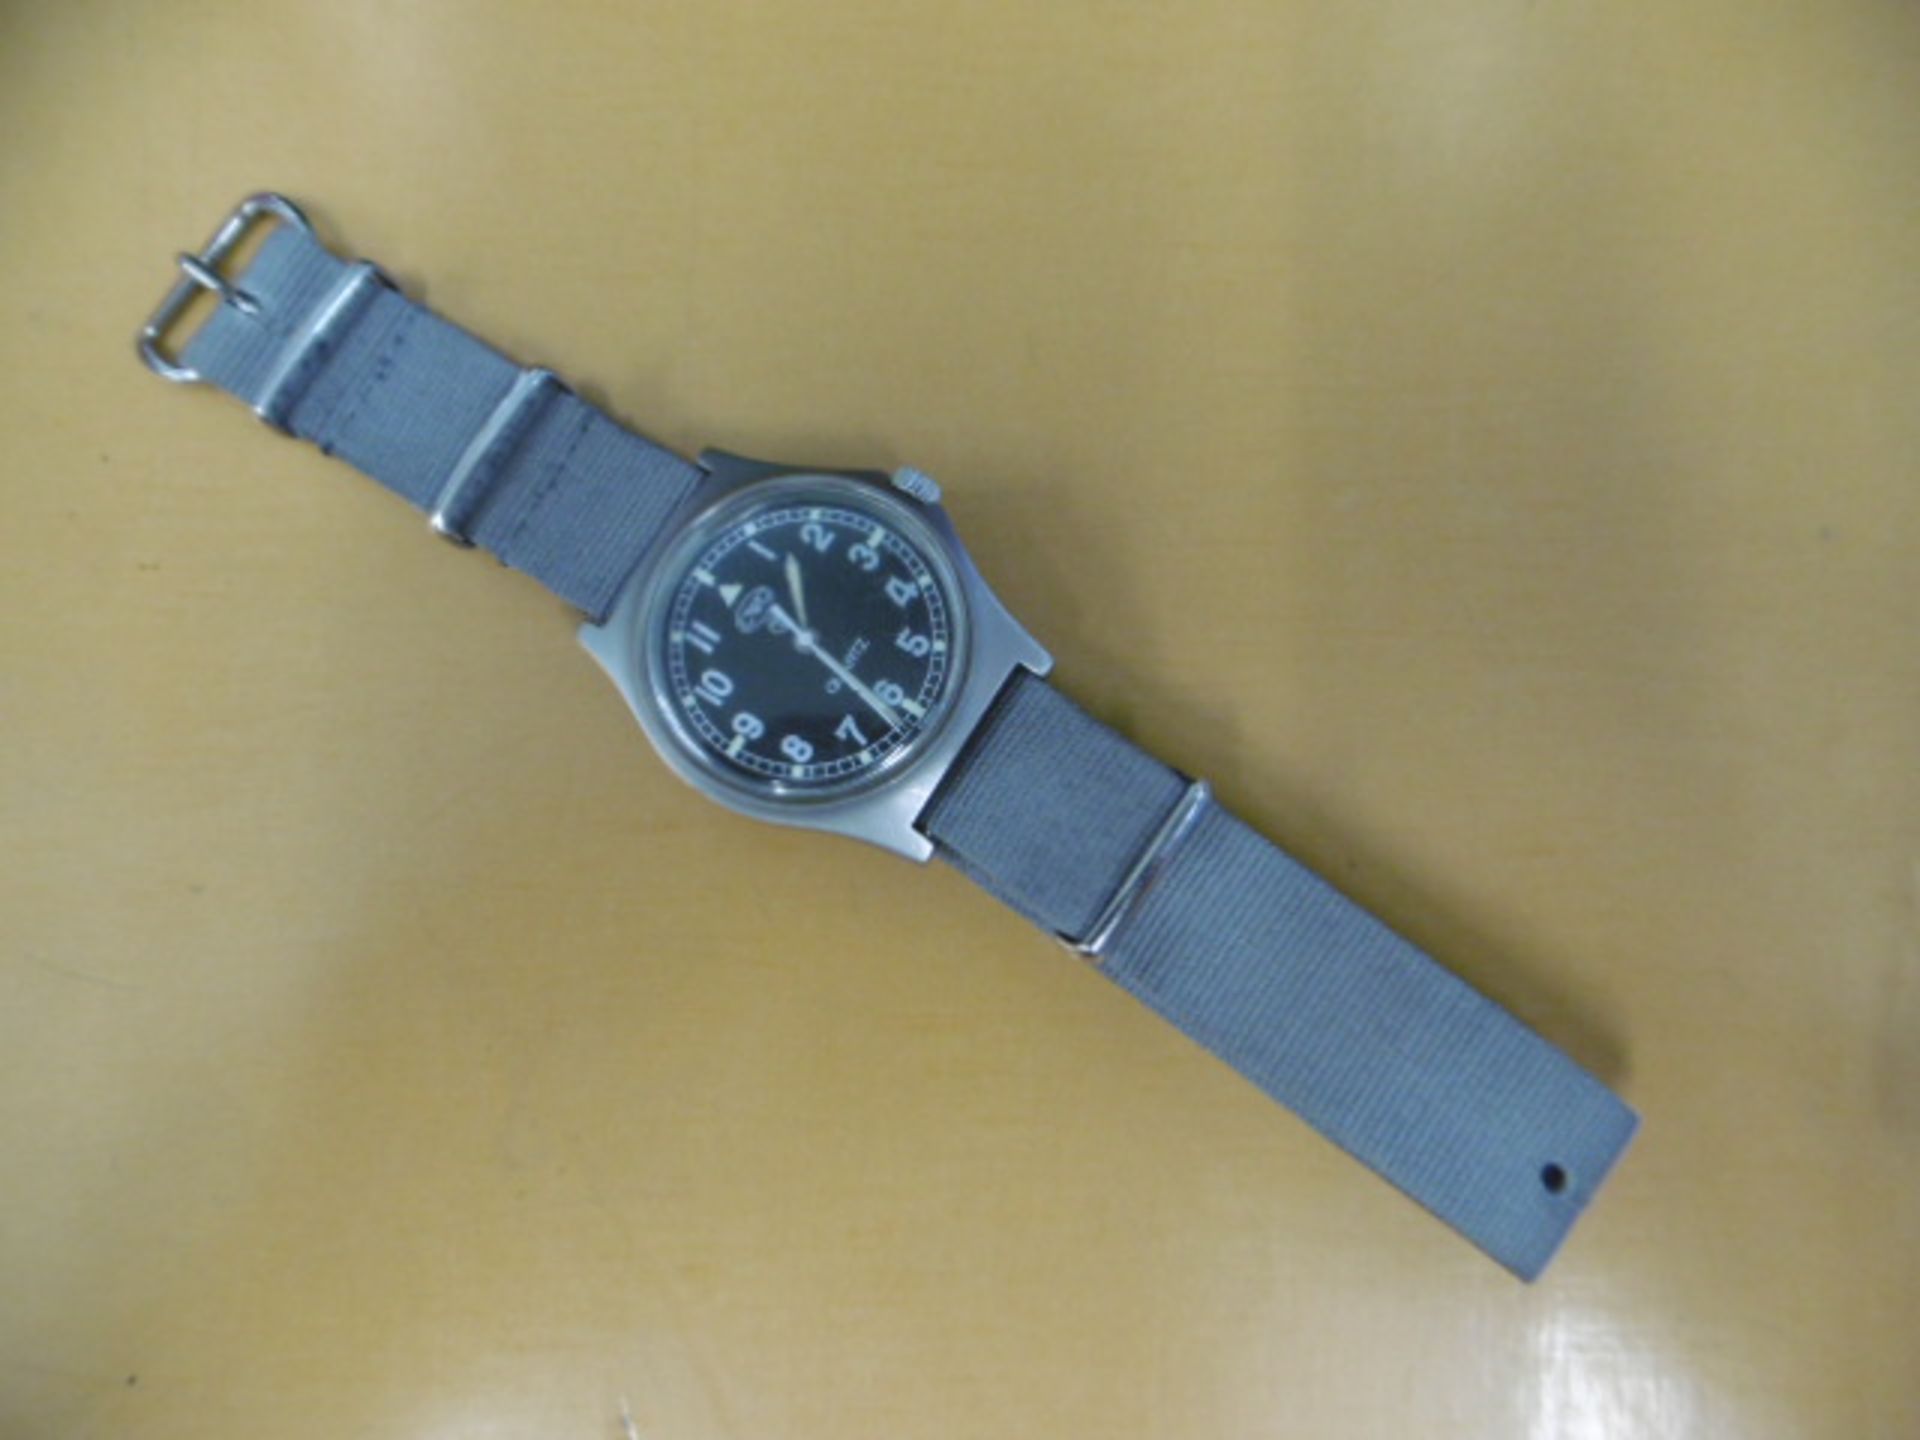 1 x Genuine British Army CWC Quartz Wrist Watch